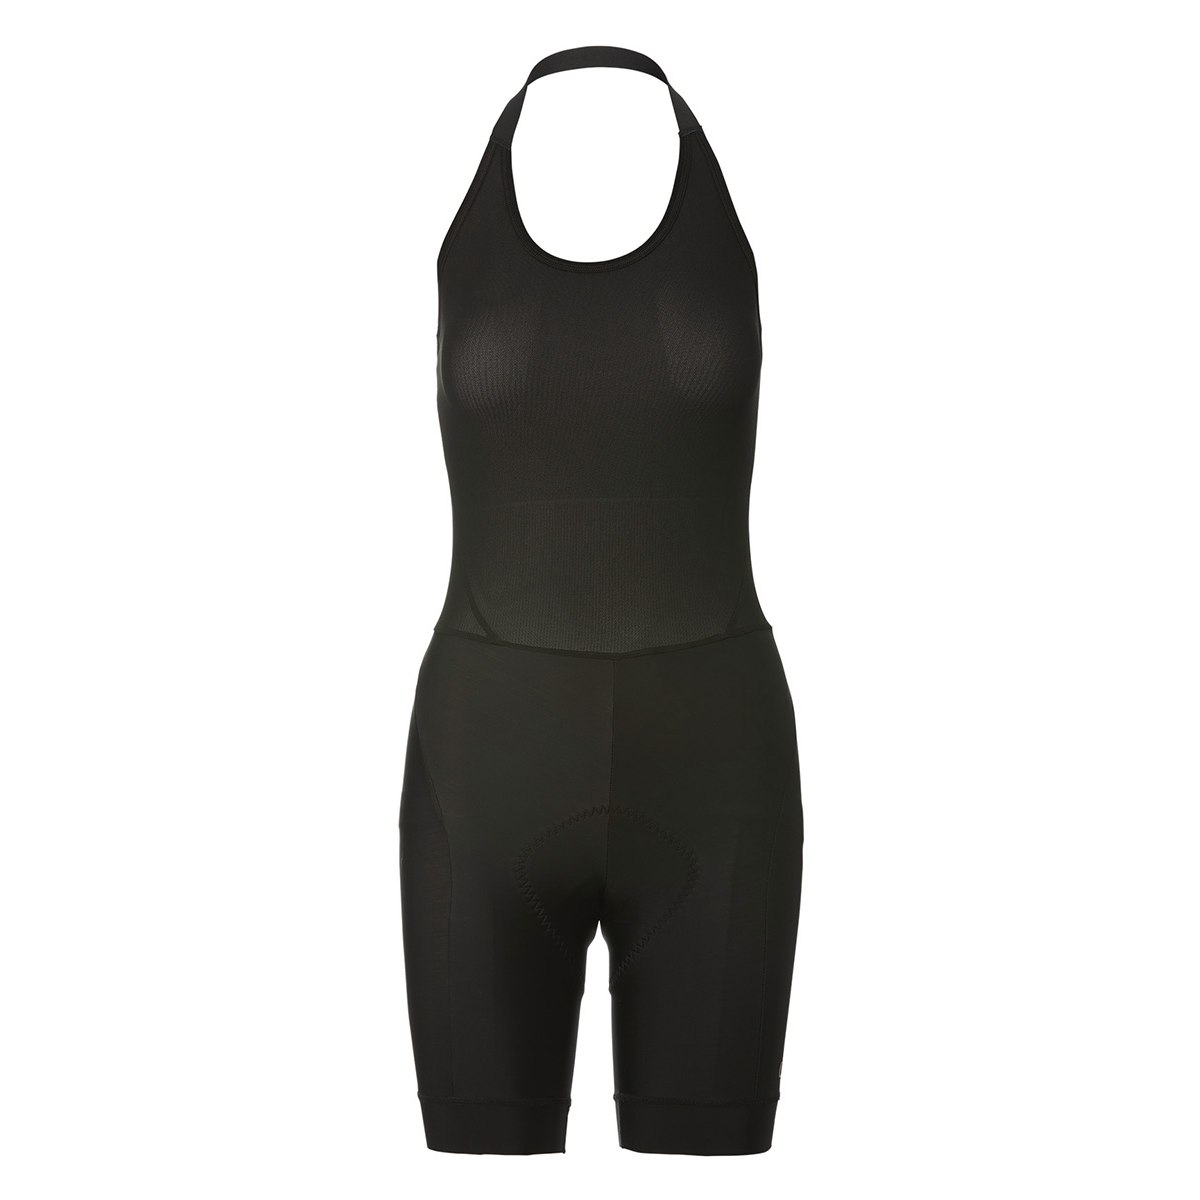 Produktbild von Giro Chrono Sport Halter Trägerhose Damen - schwarz